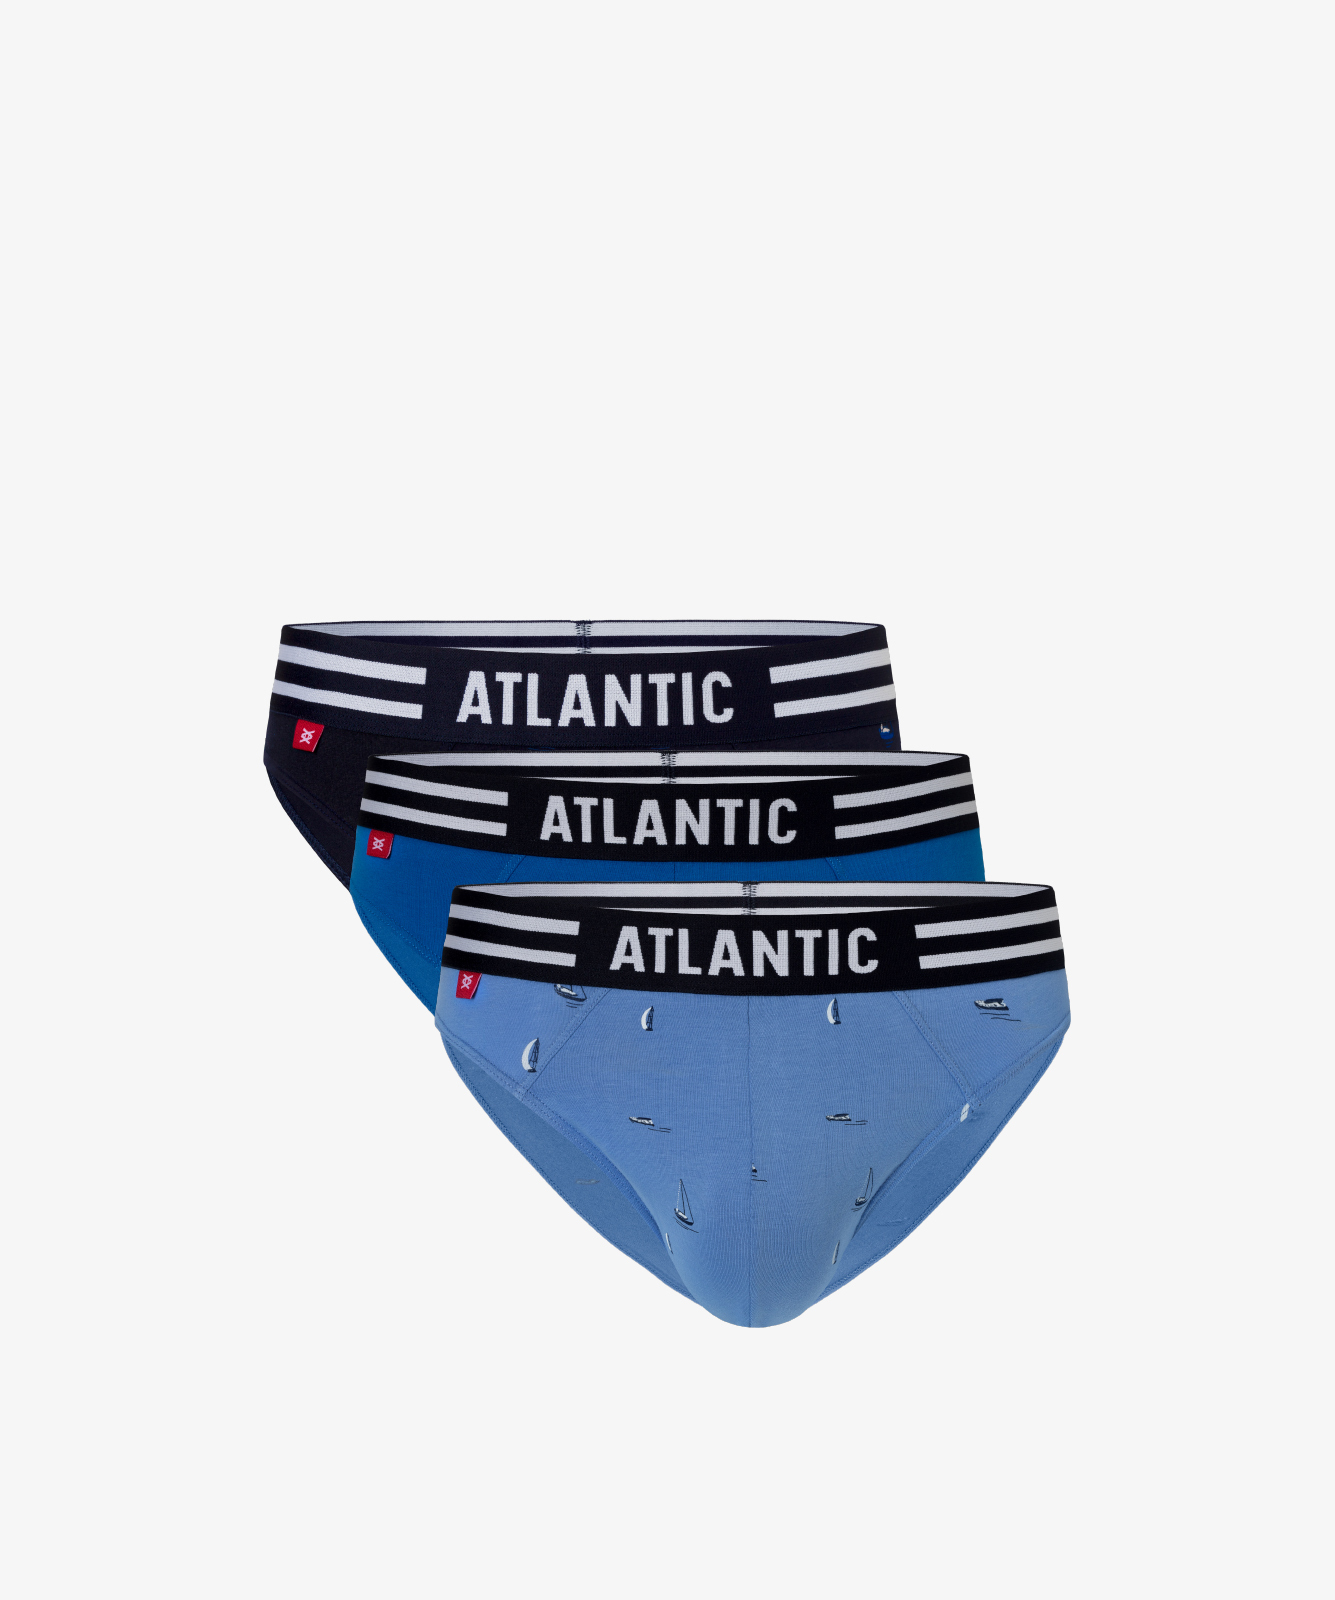 Мужские трусы слипы спорт Atlantic, набор 3 шт., хлопок, светло-голубые + бирюзовые + темно-синие, 3MP-120